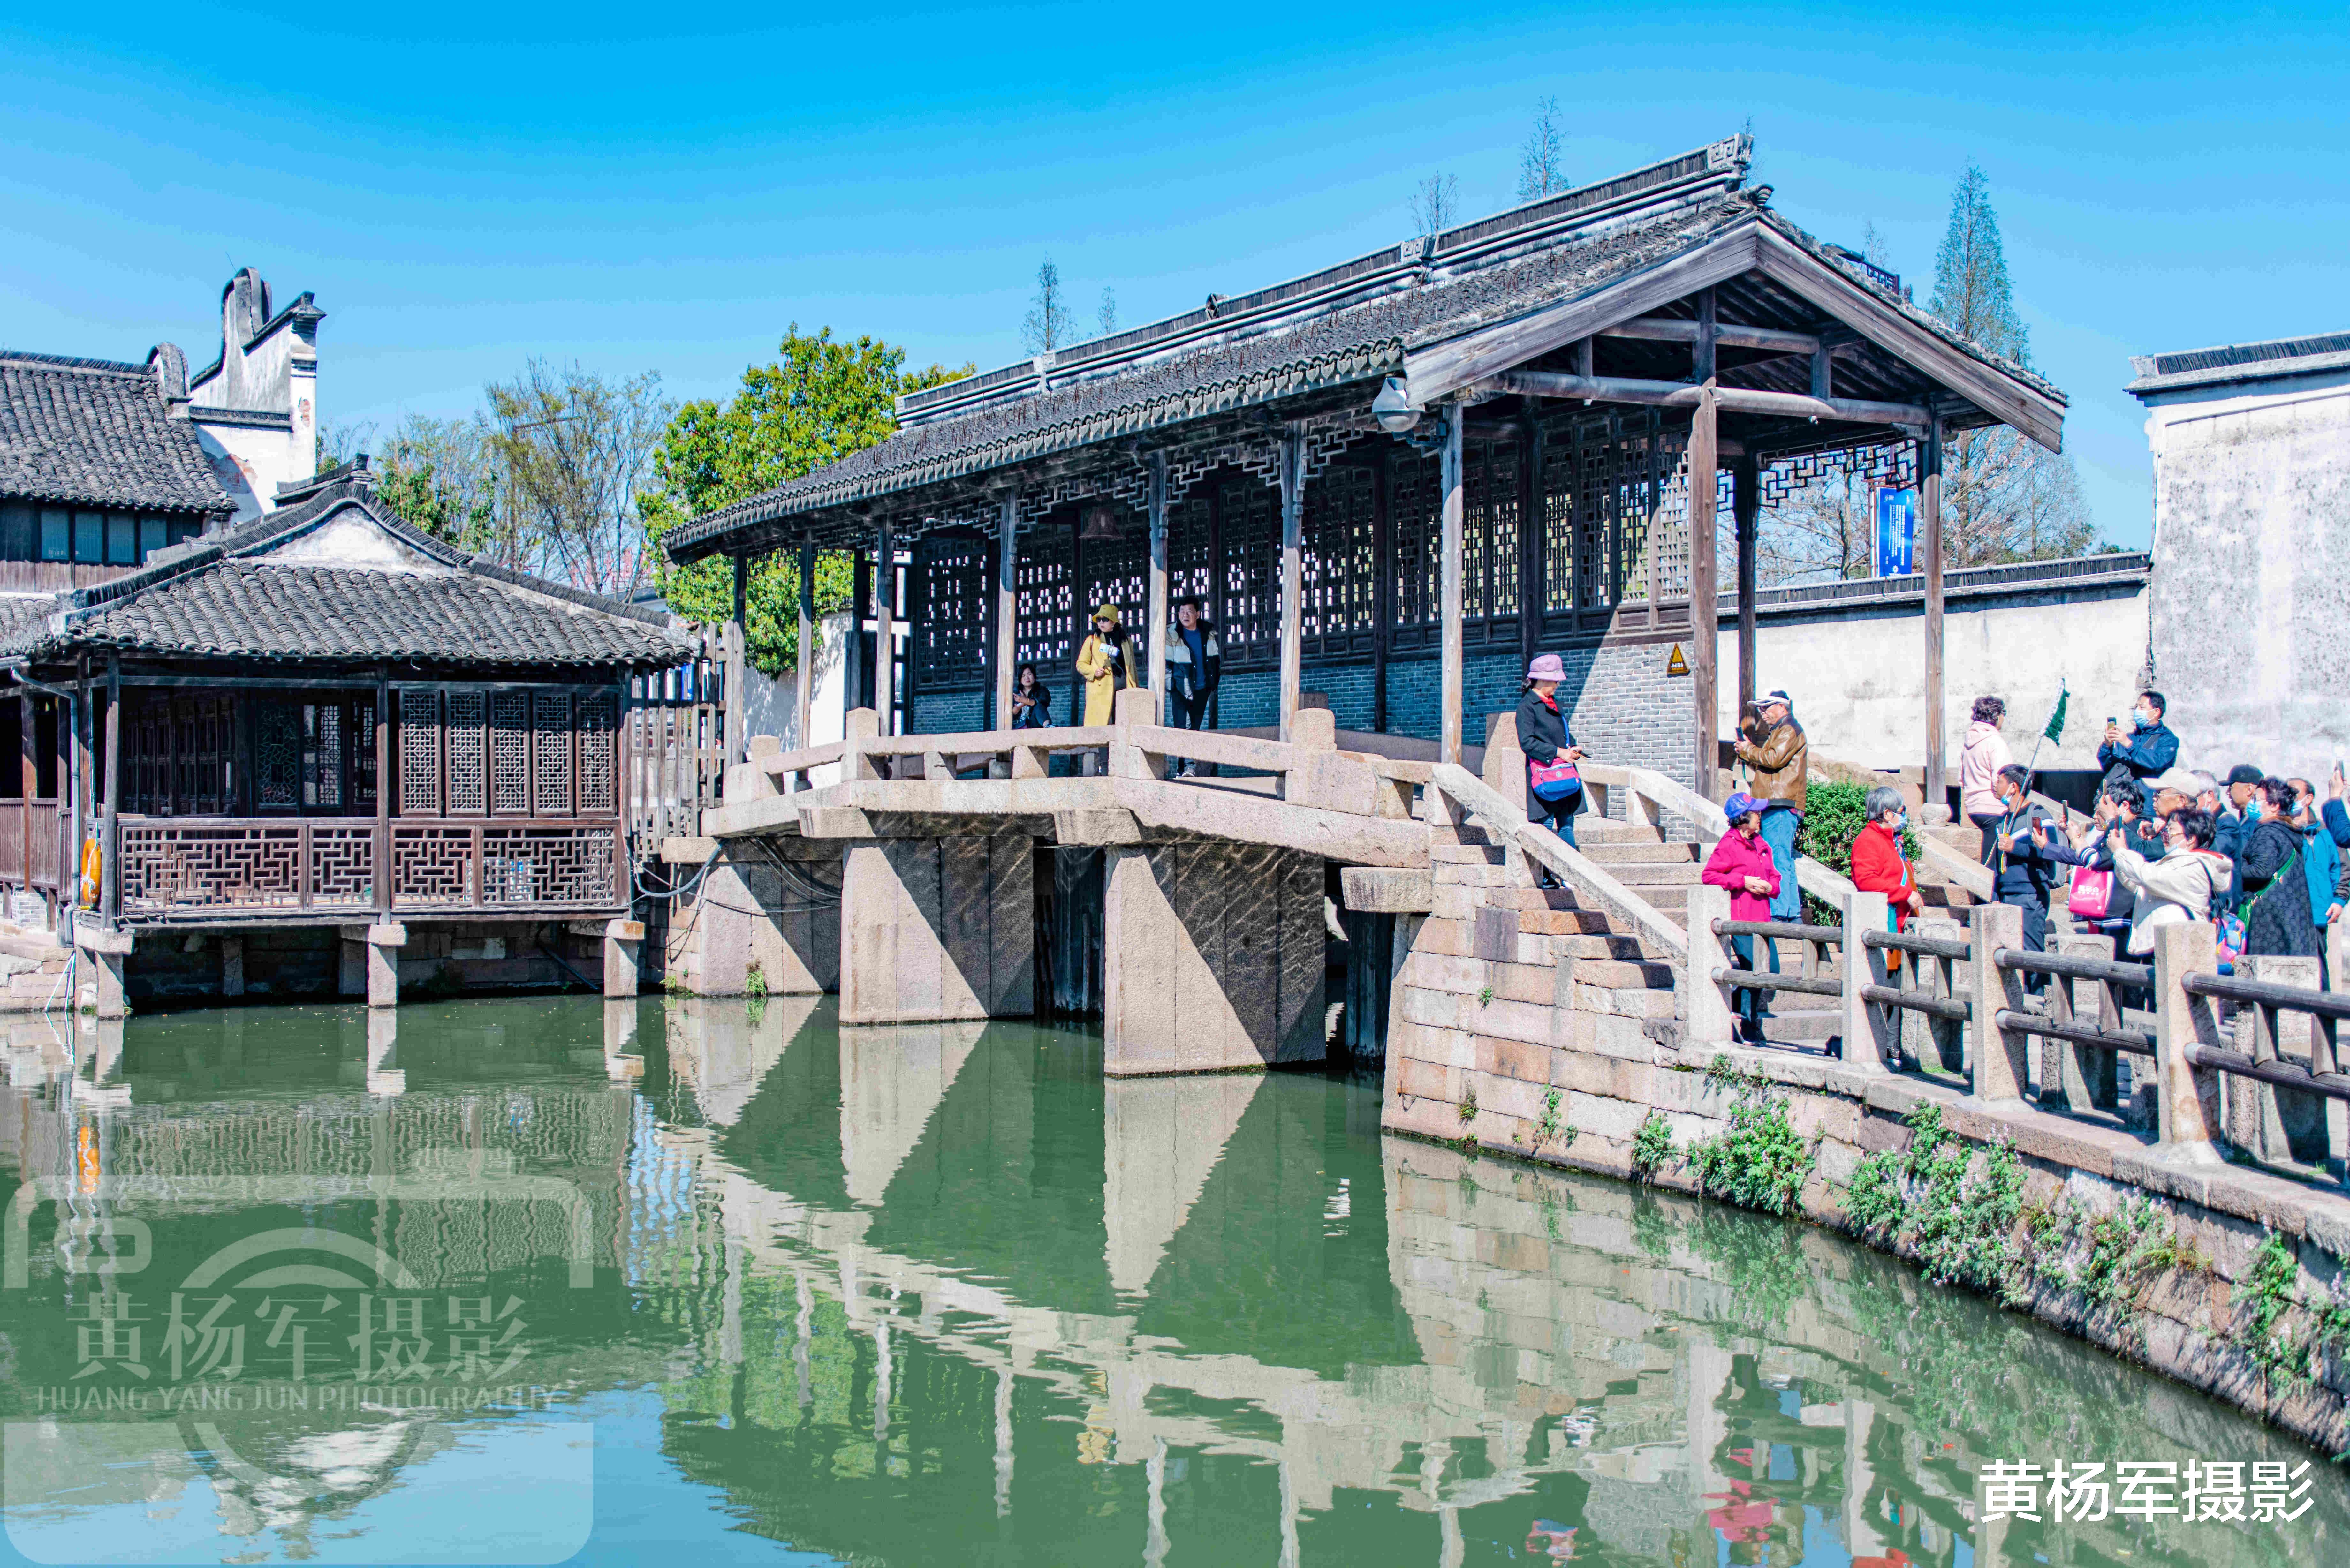 浙江省|中国地势低平无一山丘的小城，有大小河流2622条，建筑独特景色美